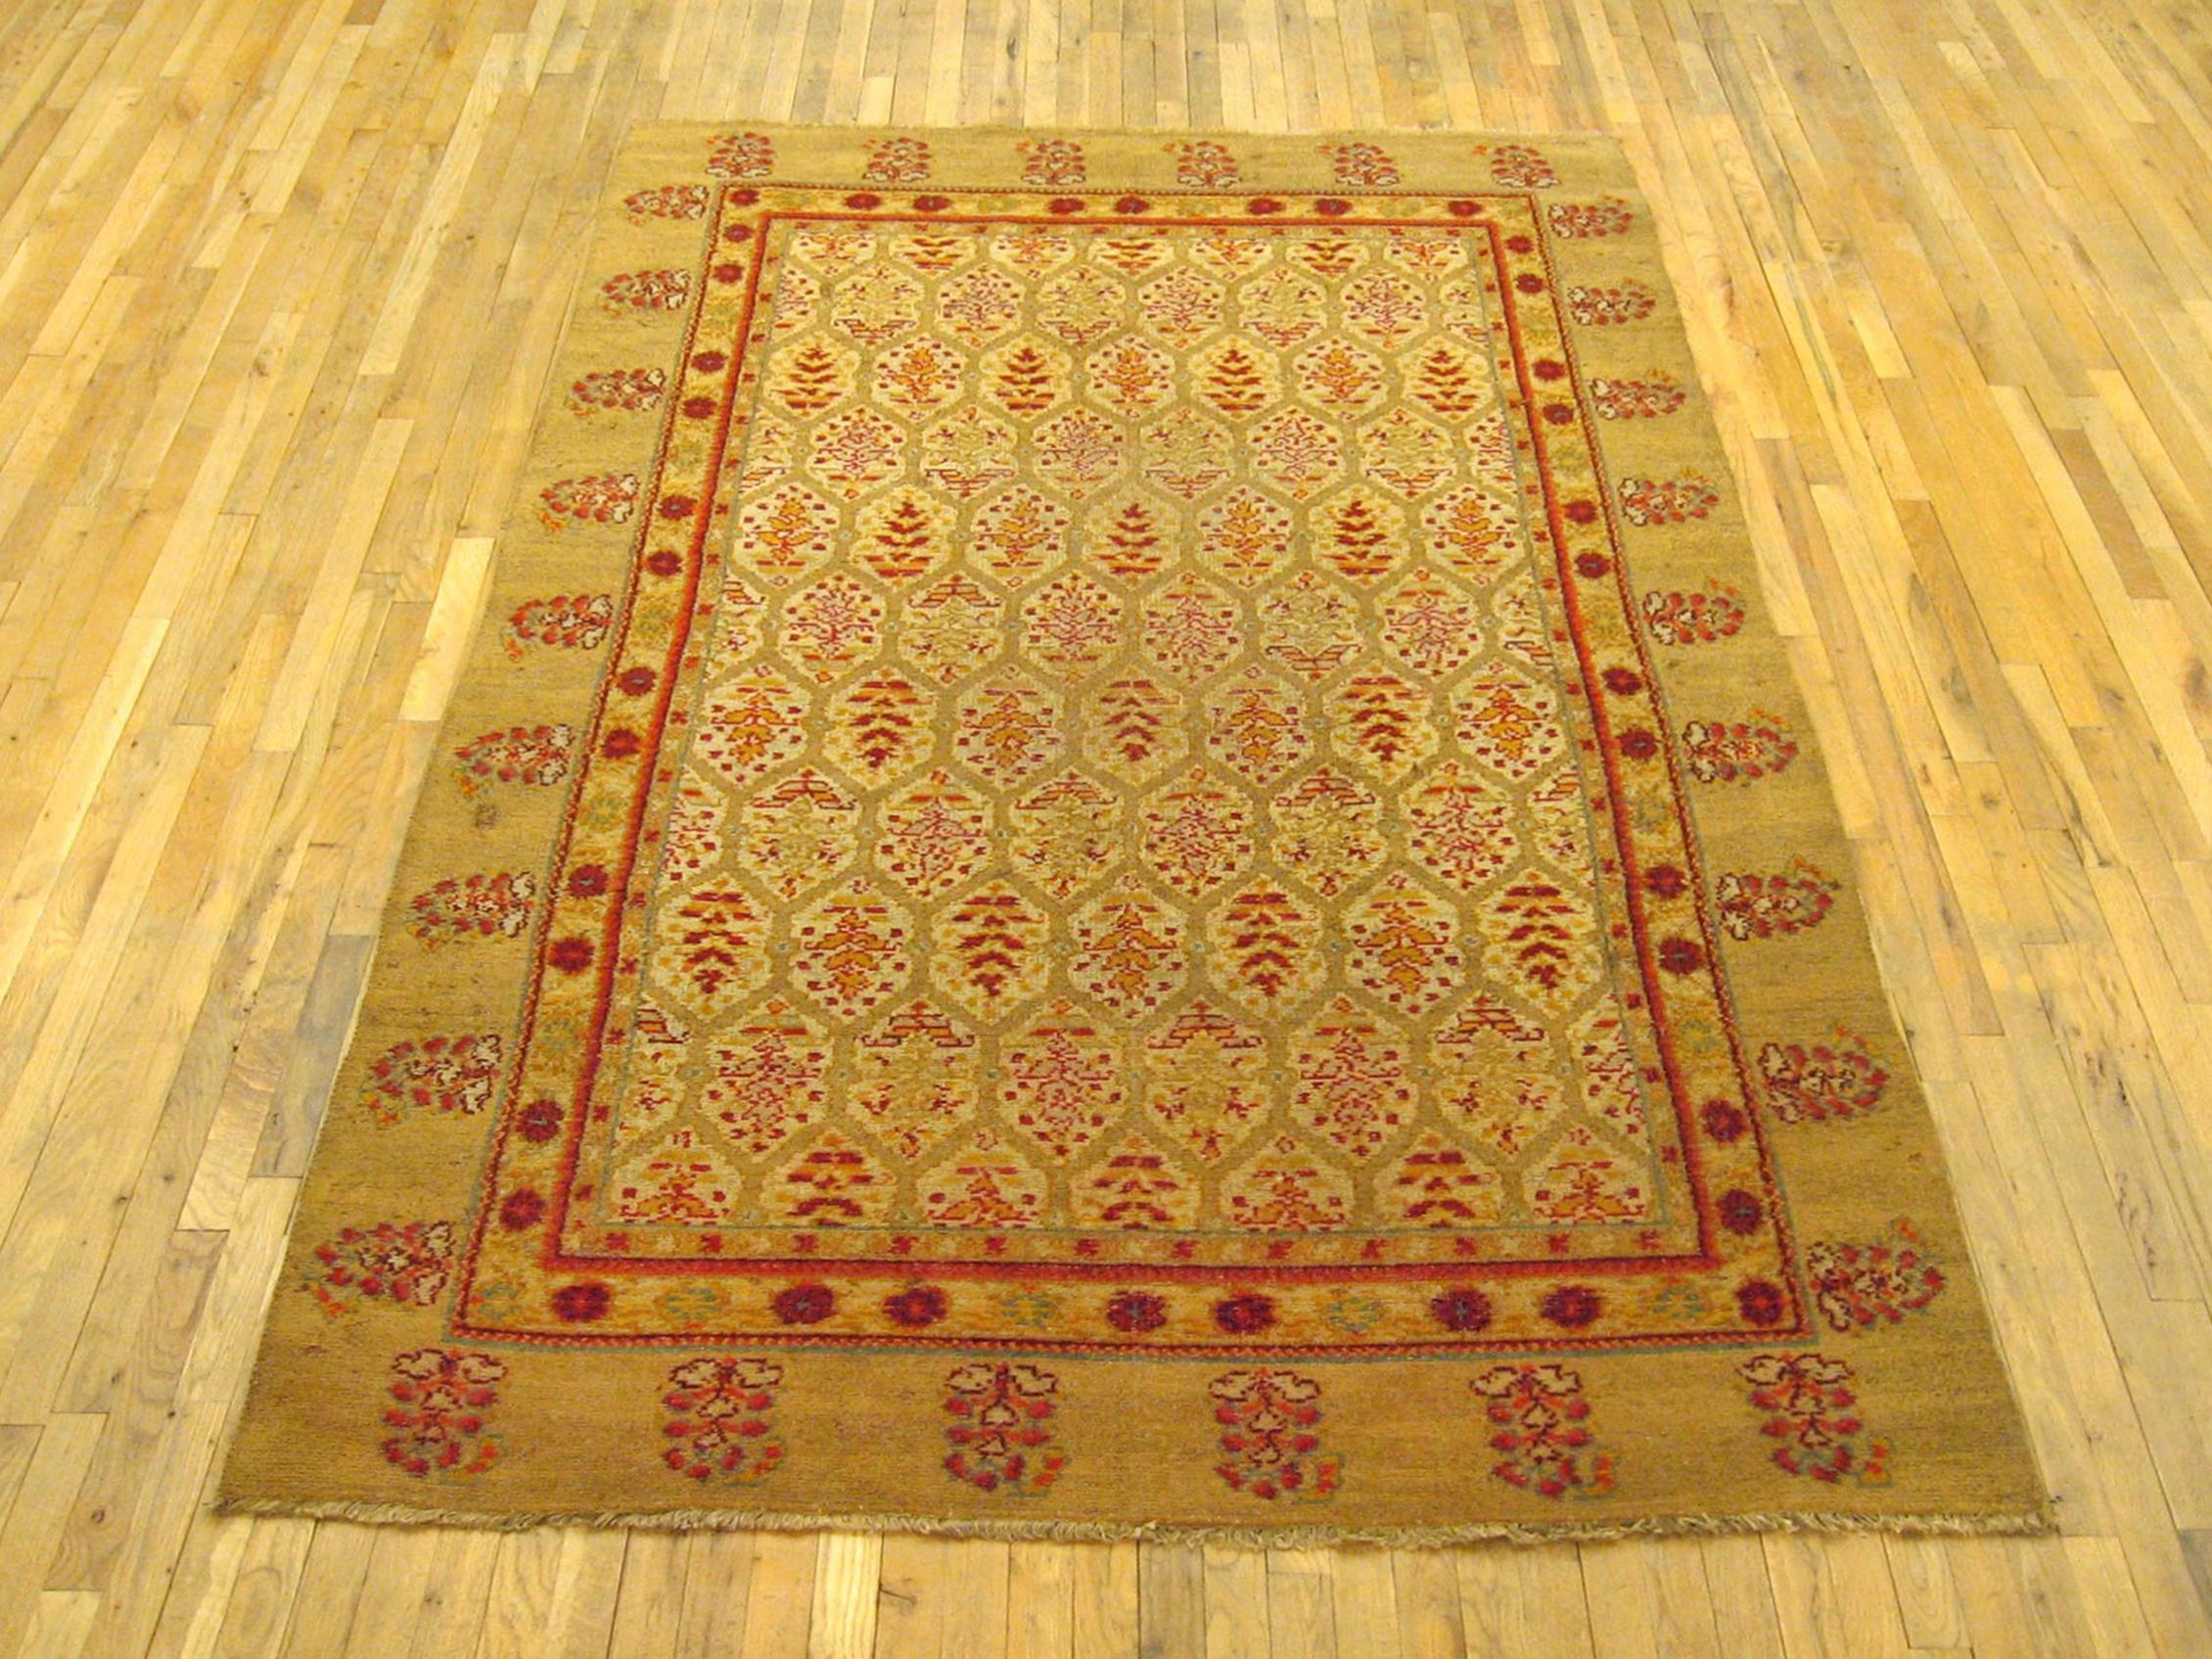 Antiker spanischer Teppich, Zimmergröße, um 1920

Ein einzigartiger antiker spanischer Teppich, handgeknüpft mit kurzem Wollflor. Dieser schöne Teppich ist ein einzigartiger doppelseitiger Teppich mit Flor sowohl auf der Vorder- als auch auf der